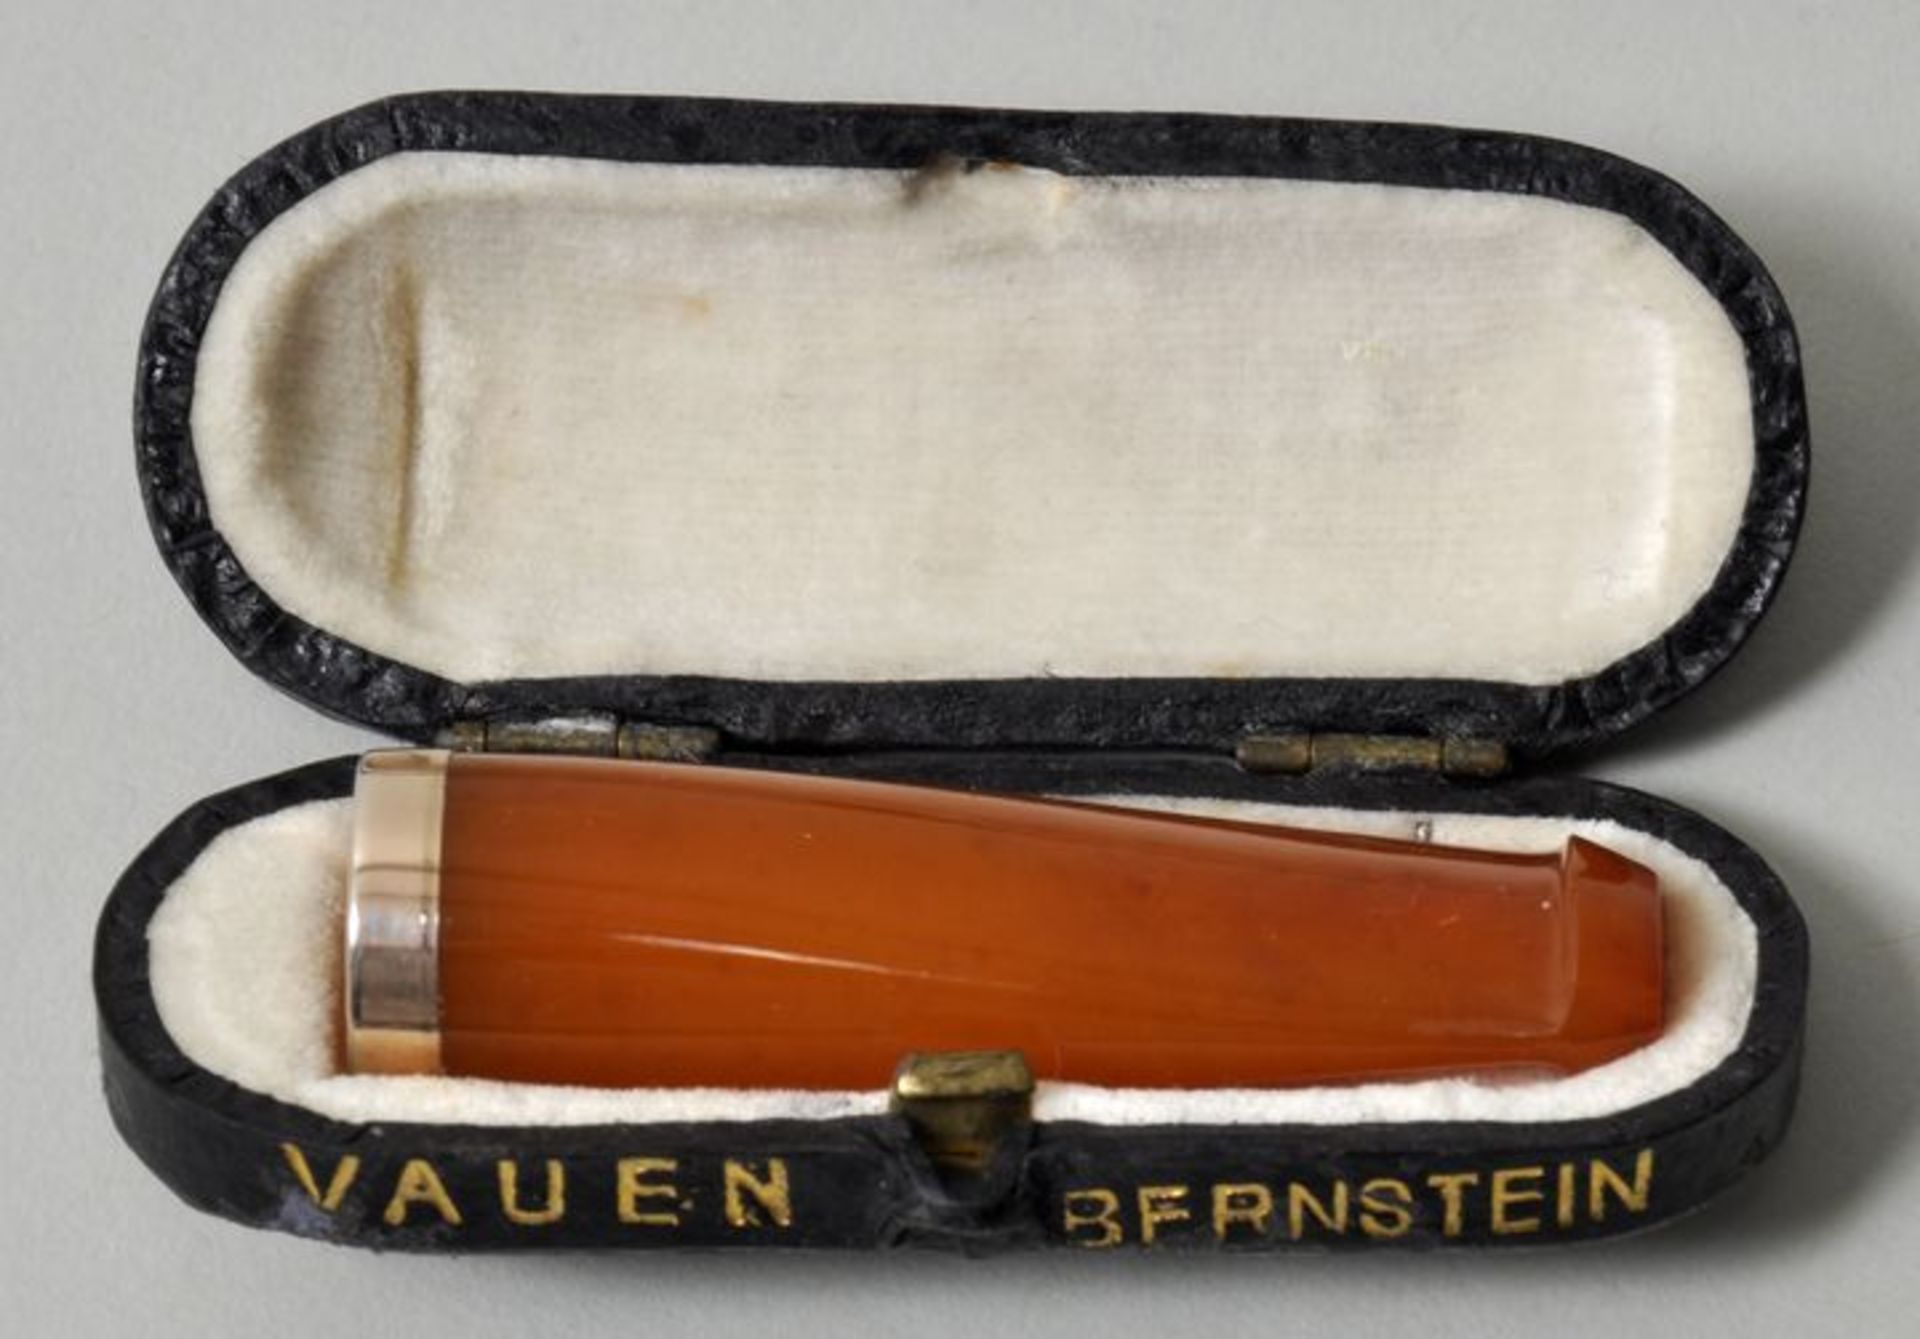 Bernstein-Zigarettenspitze, ca. 1920Bernstein, vergoldeter Ring, guter Zustand. L. 53 mm. Im